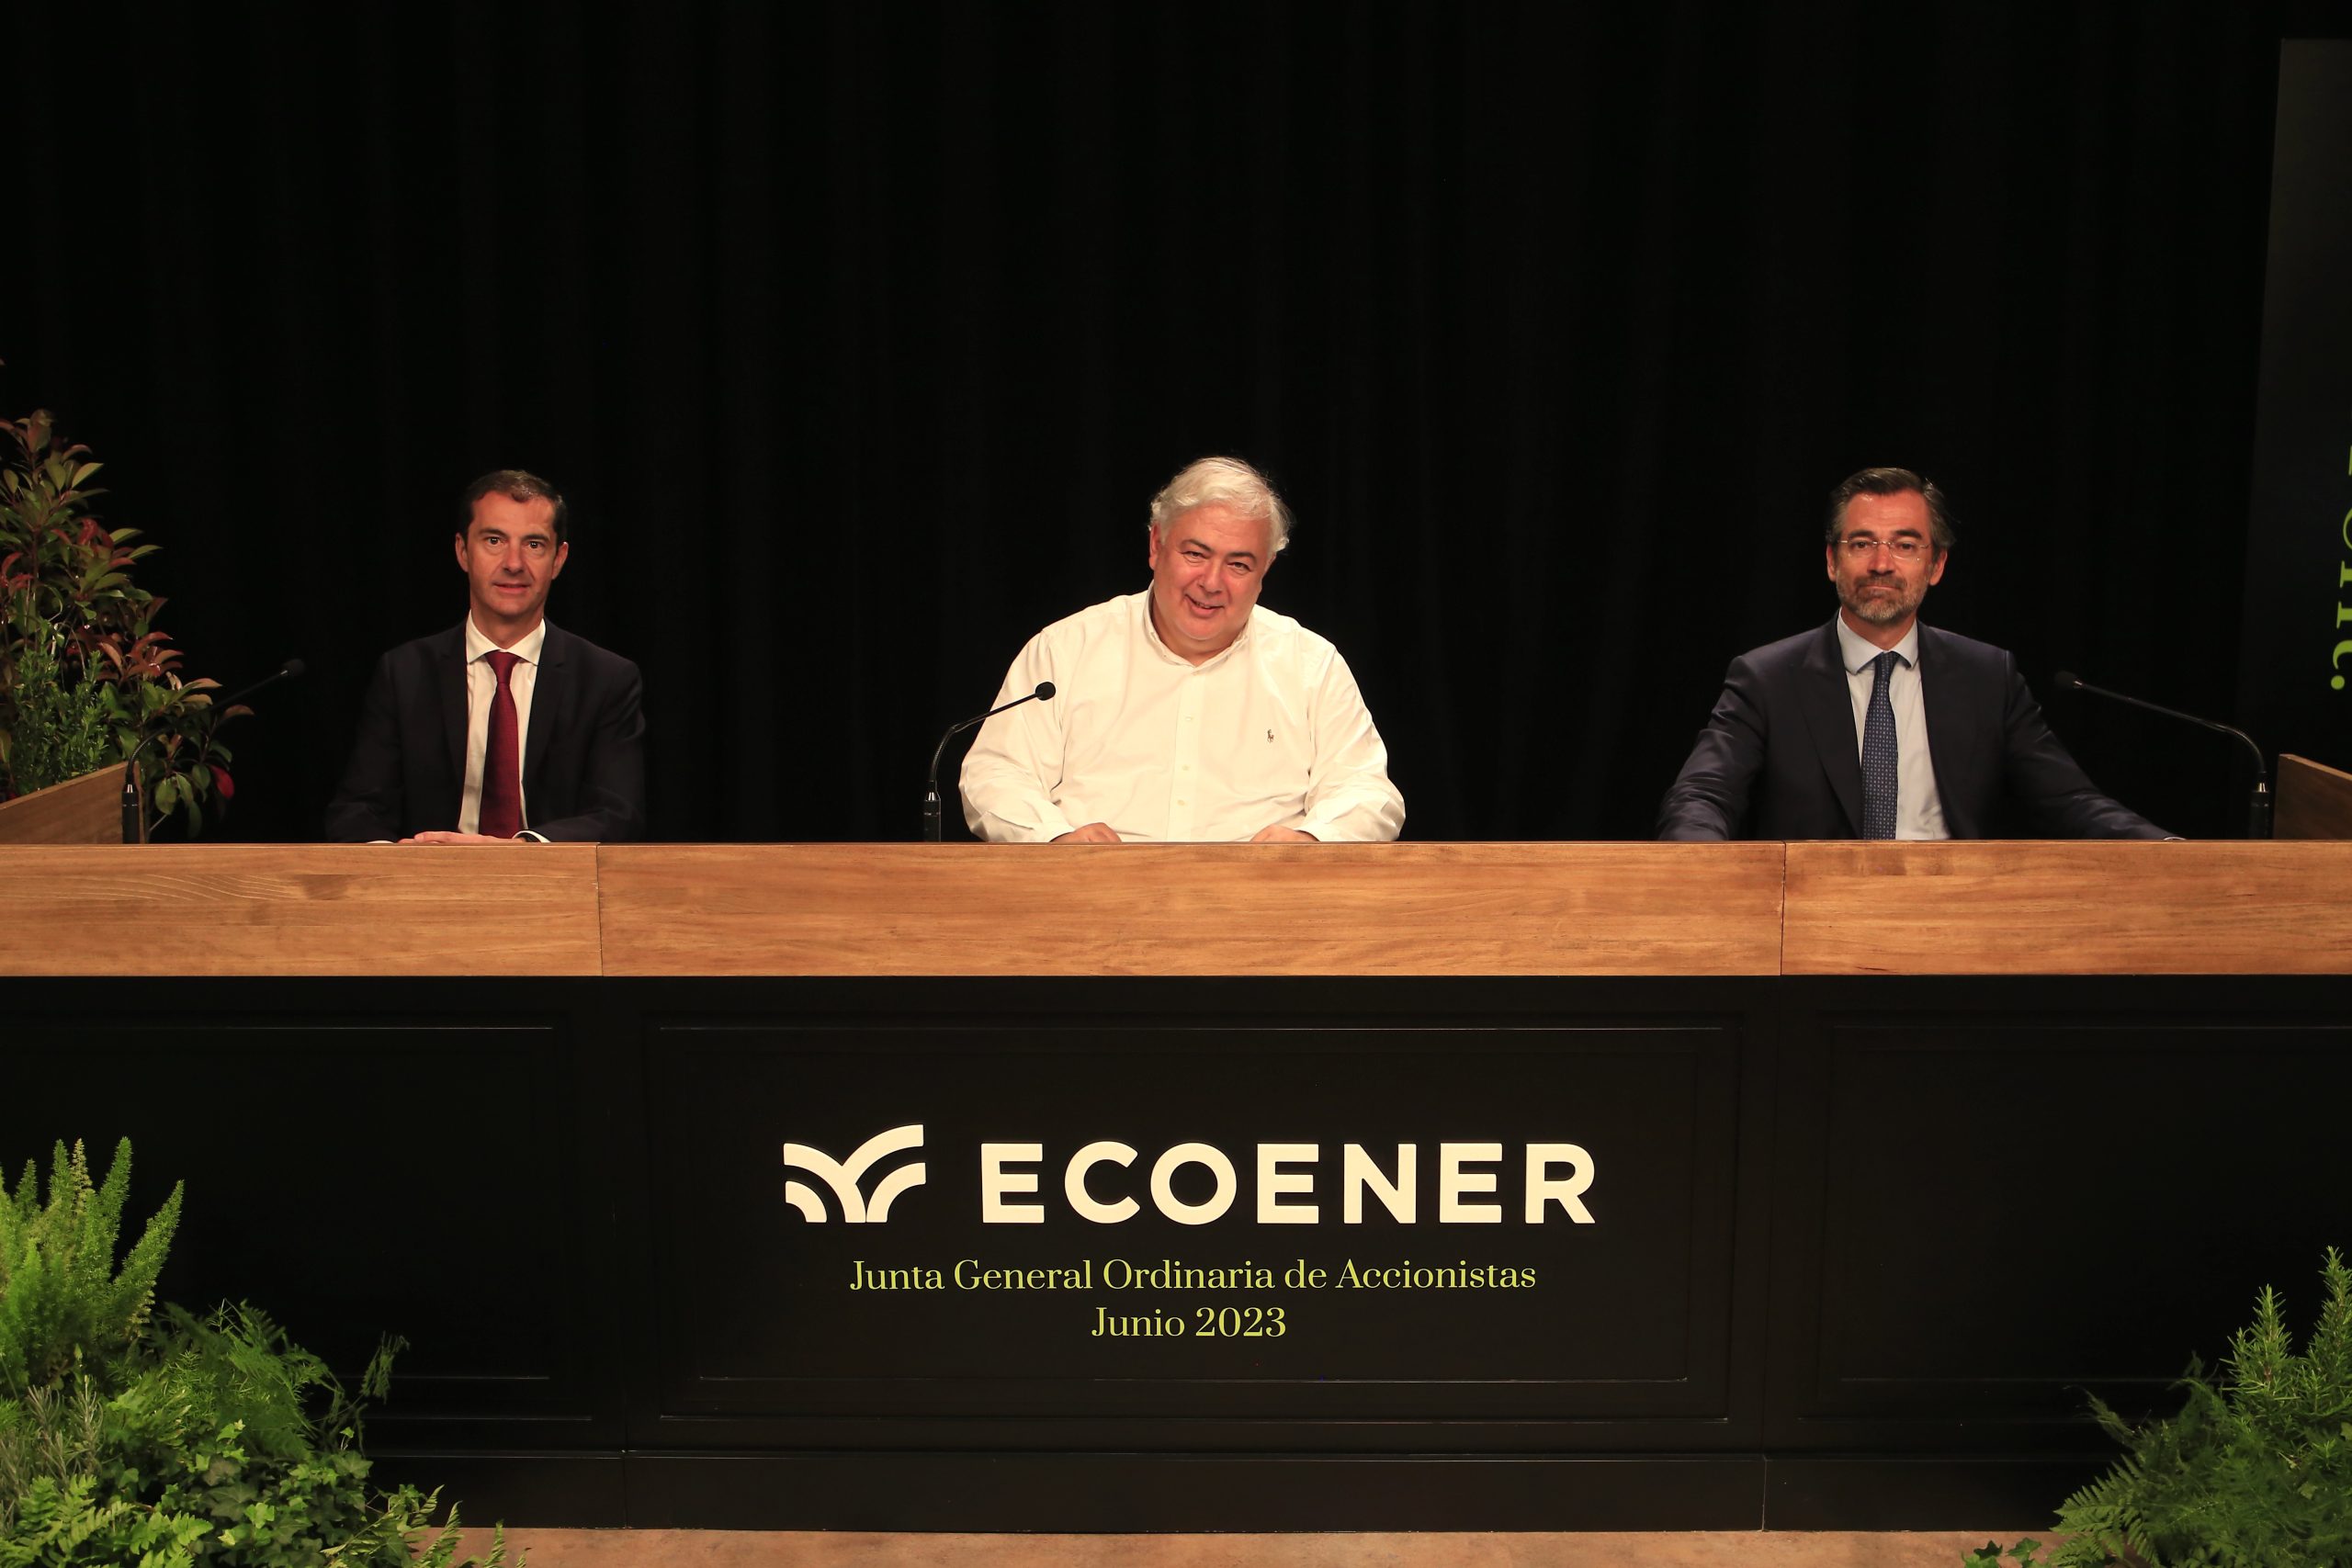 La Junta General de Accionistas de Ecoener aprobó las cuentas de 2022, con un beneficio neto de 20,2 millones de euros